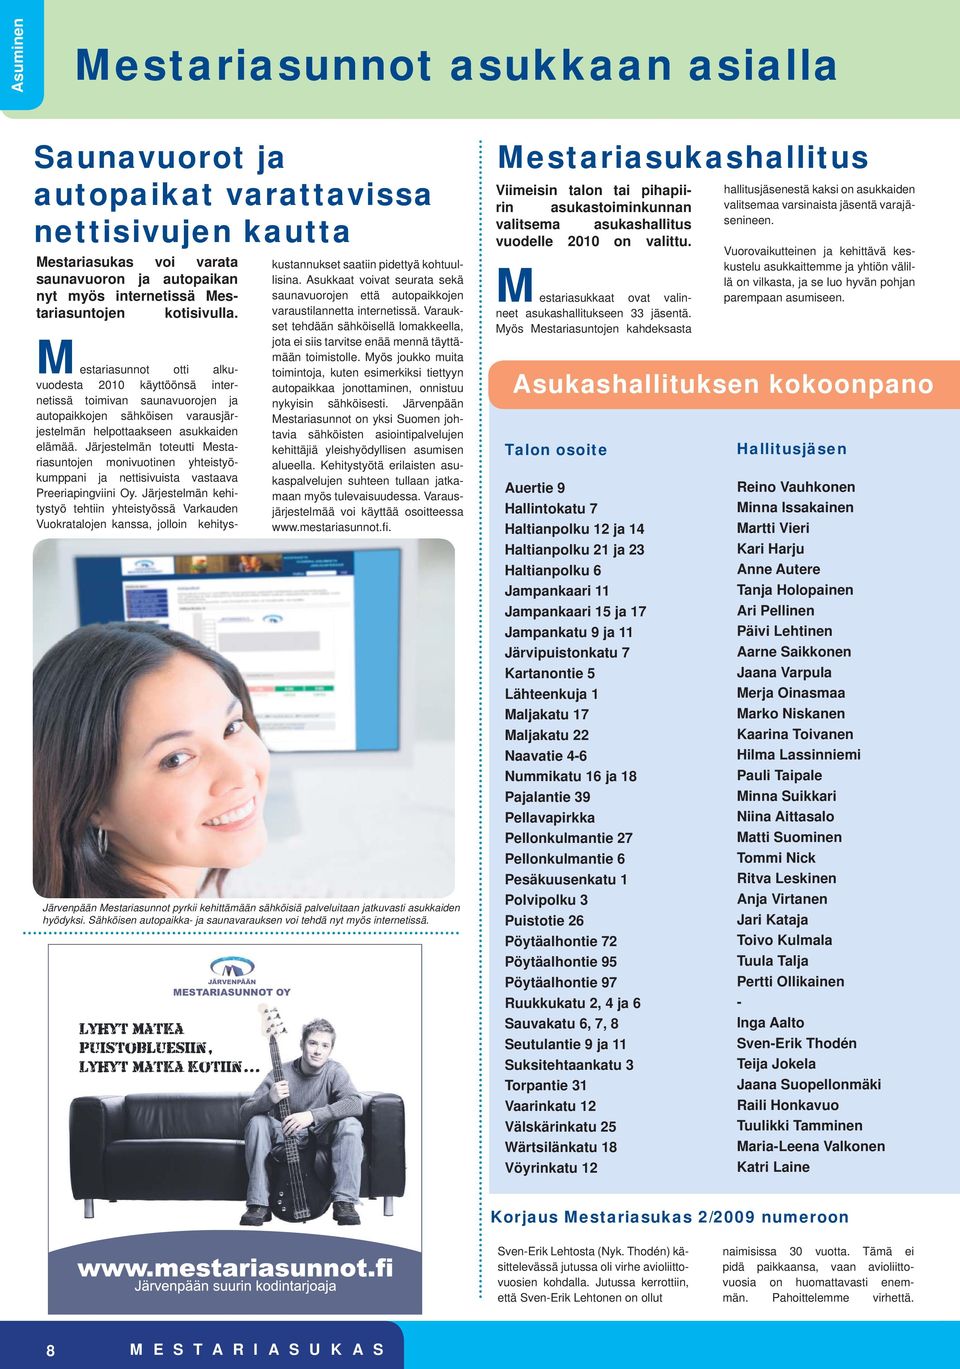 Järjestelmän toteutti Mestariasuntojen monivuotinen yhteistyökumppani ja nettisivuista vastaava Preeriapingviini Oy.